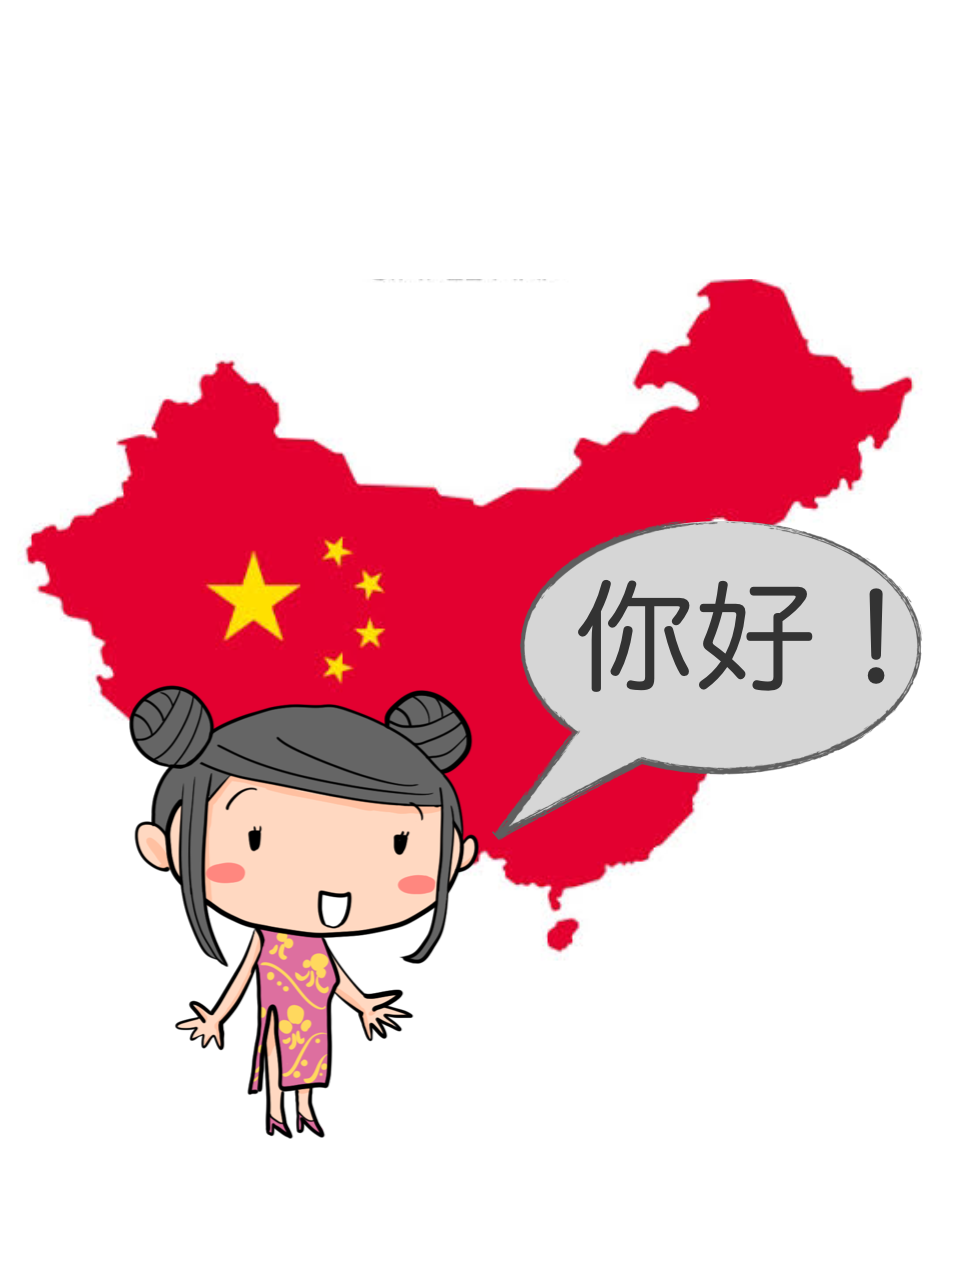 หลักสูตรภาษาจีนกลาง